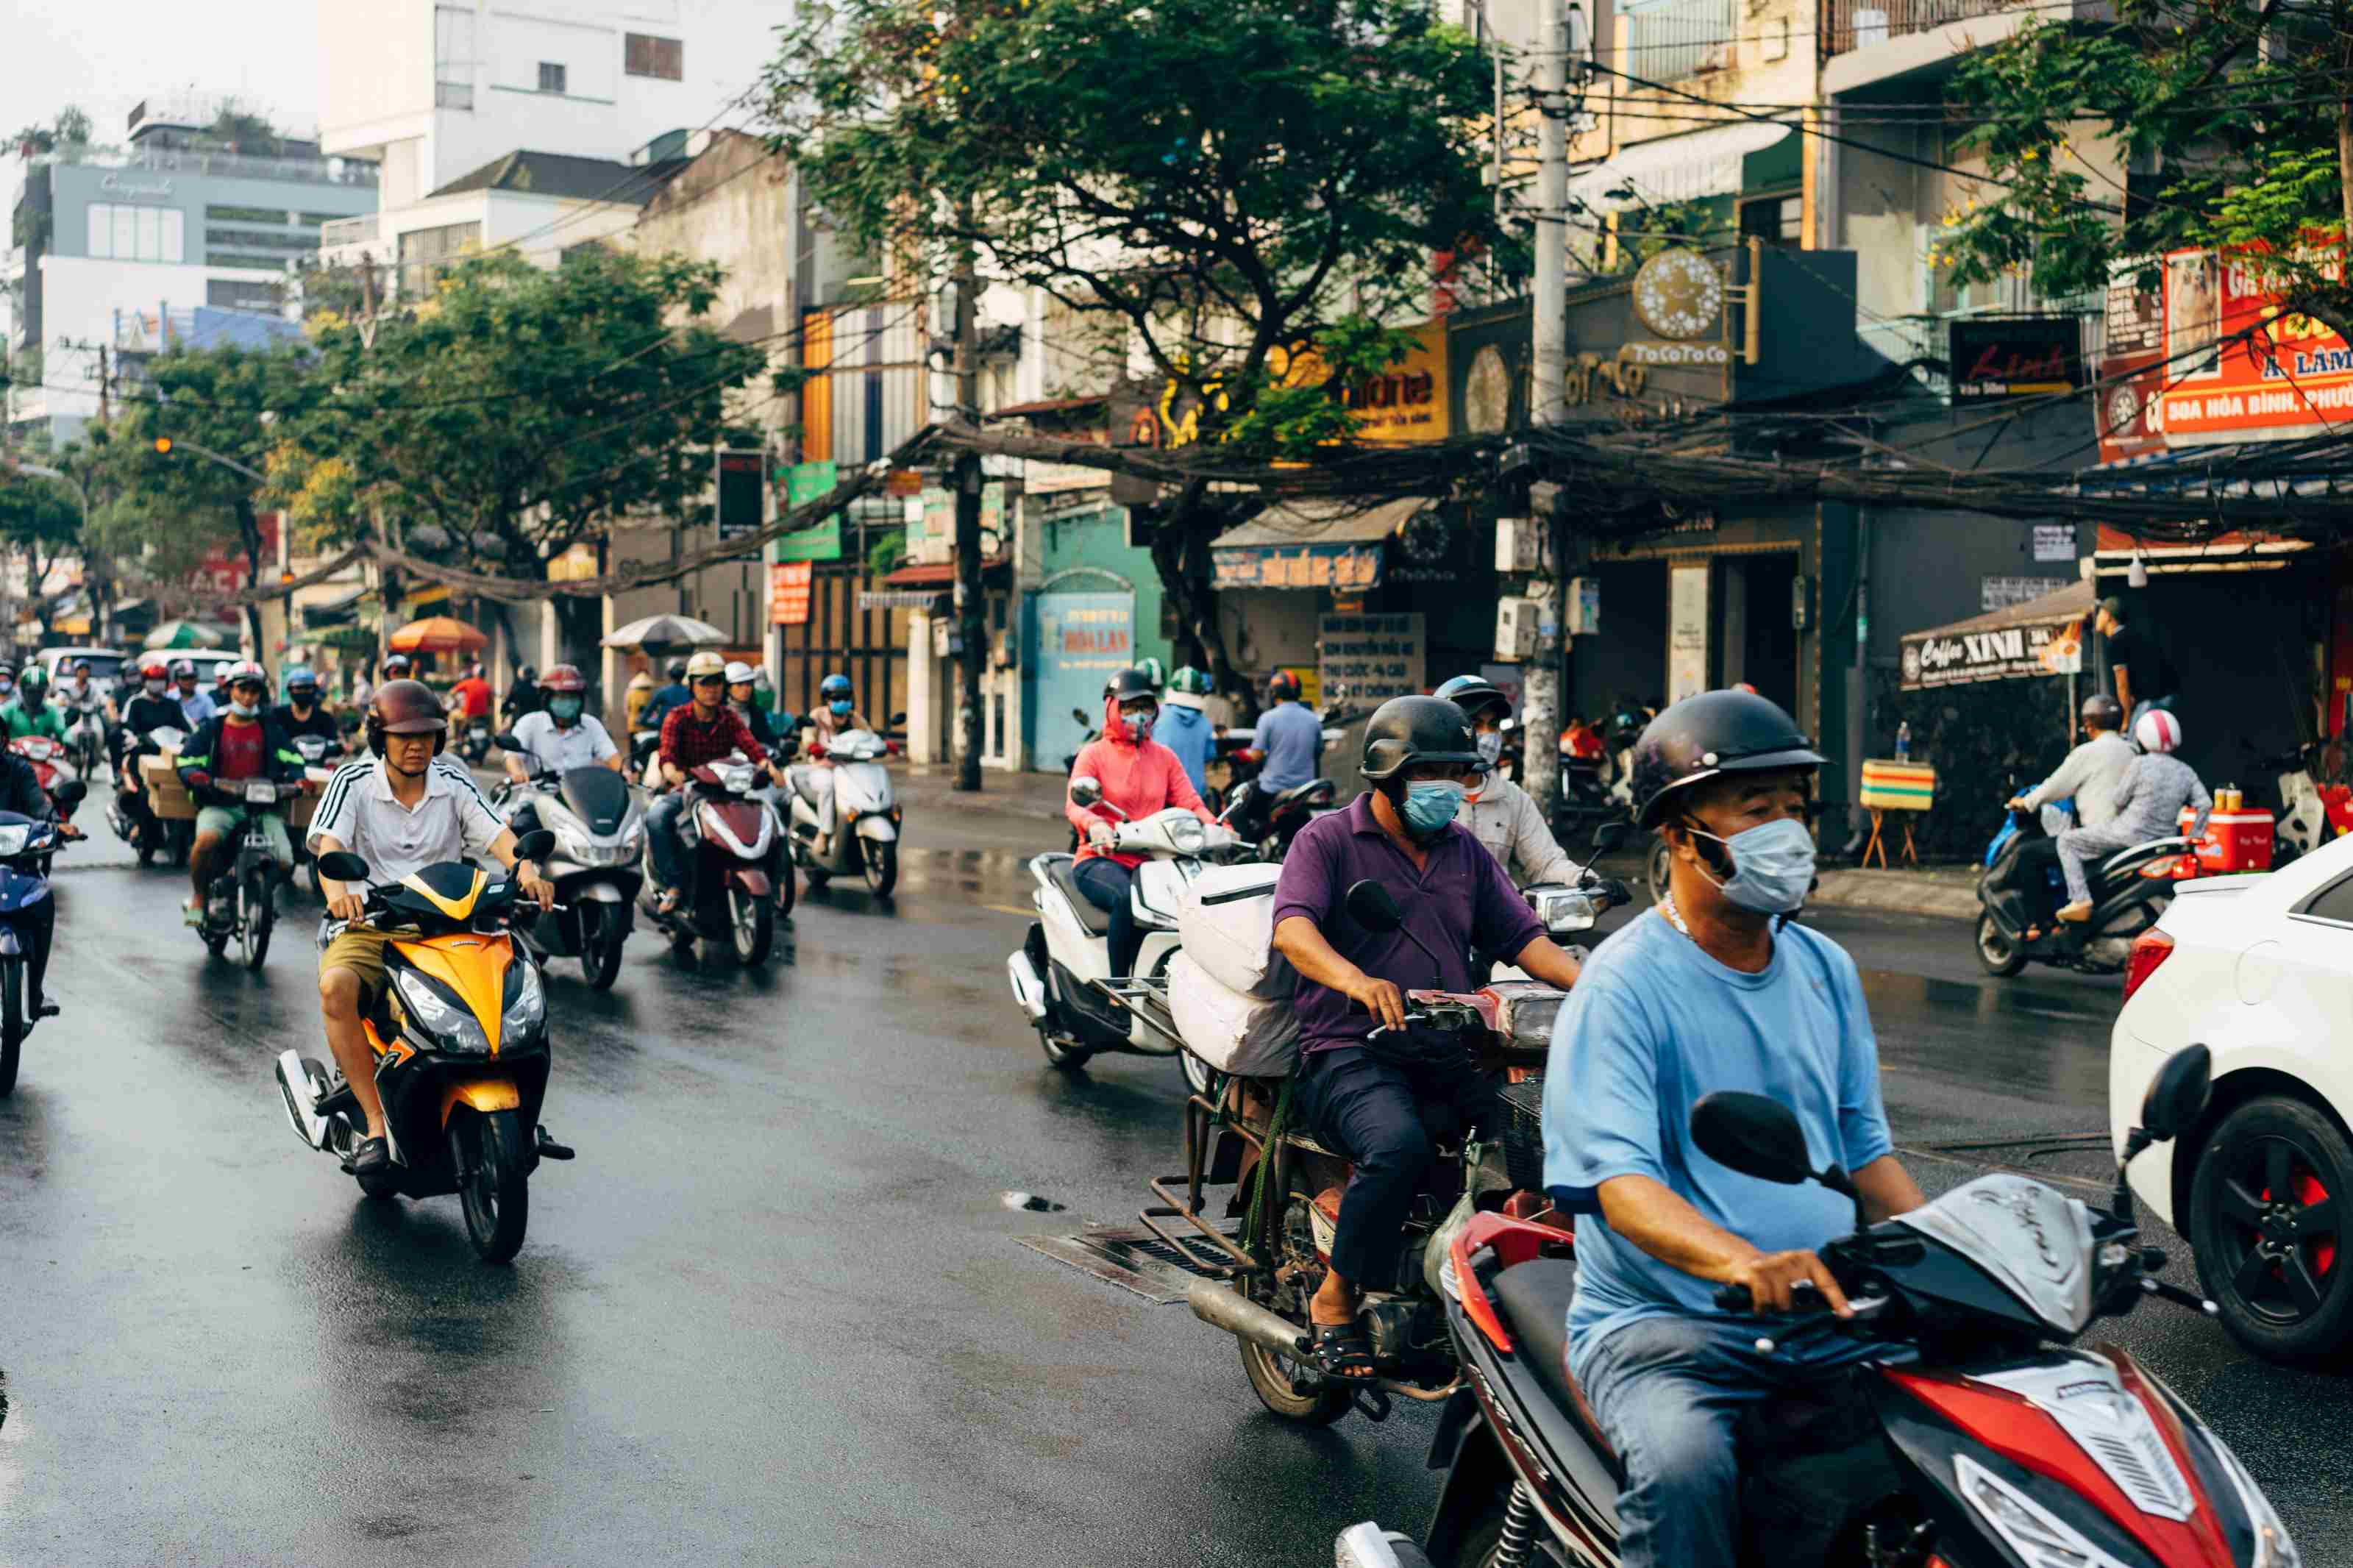 【汽车配件外贸】2021越南原装汽车和汽车零配件进口大幅增长-孚盟软件